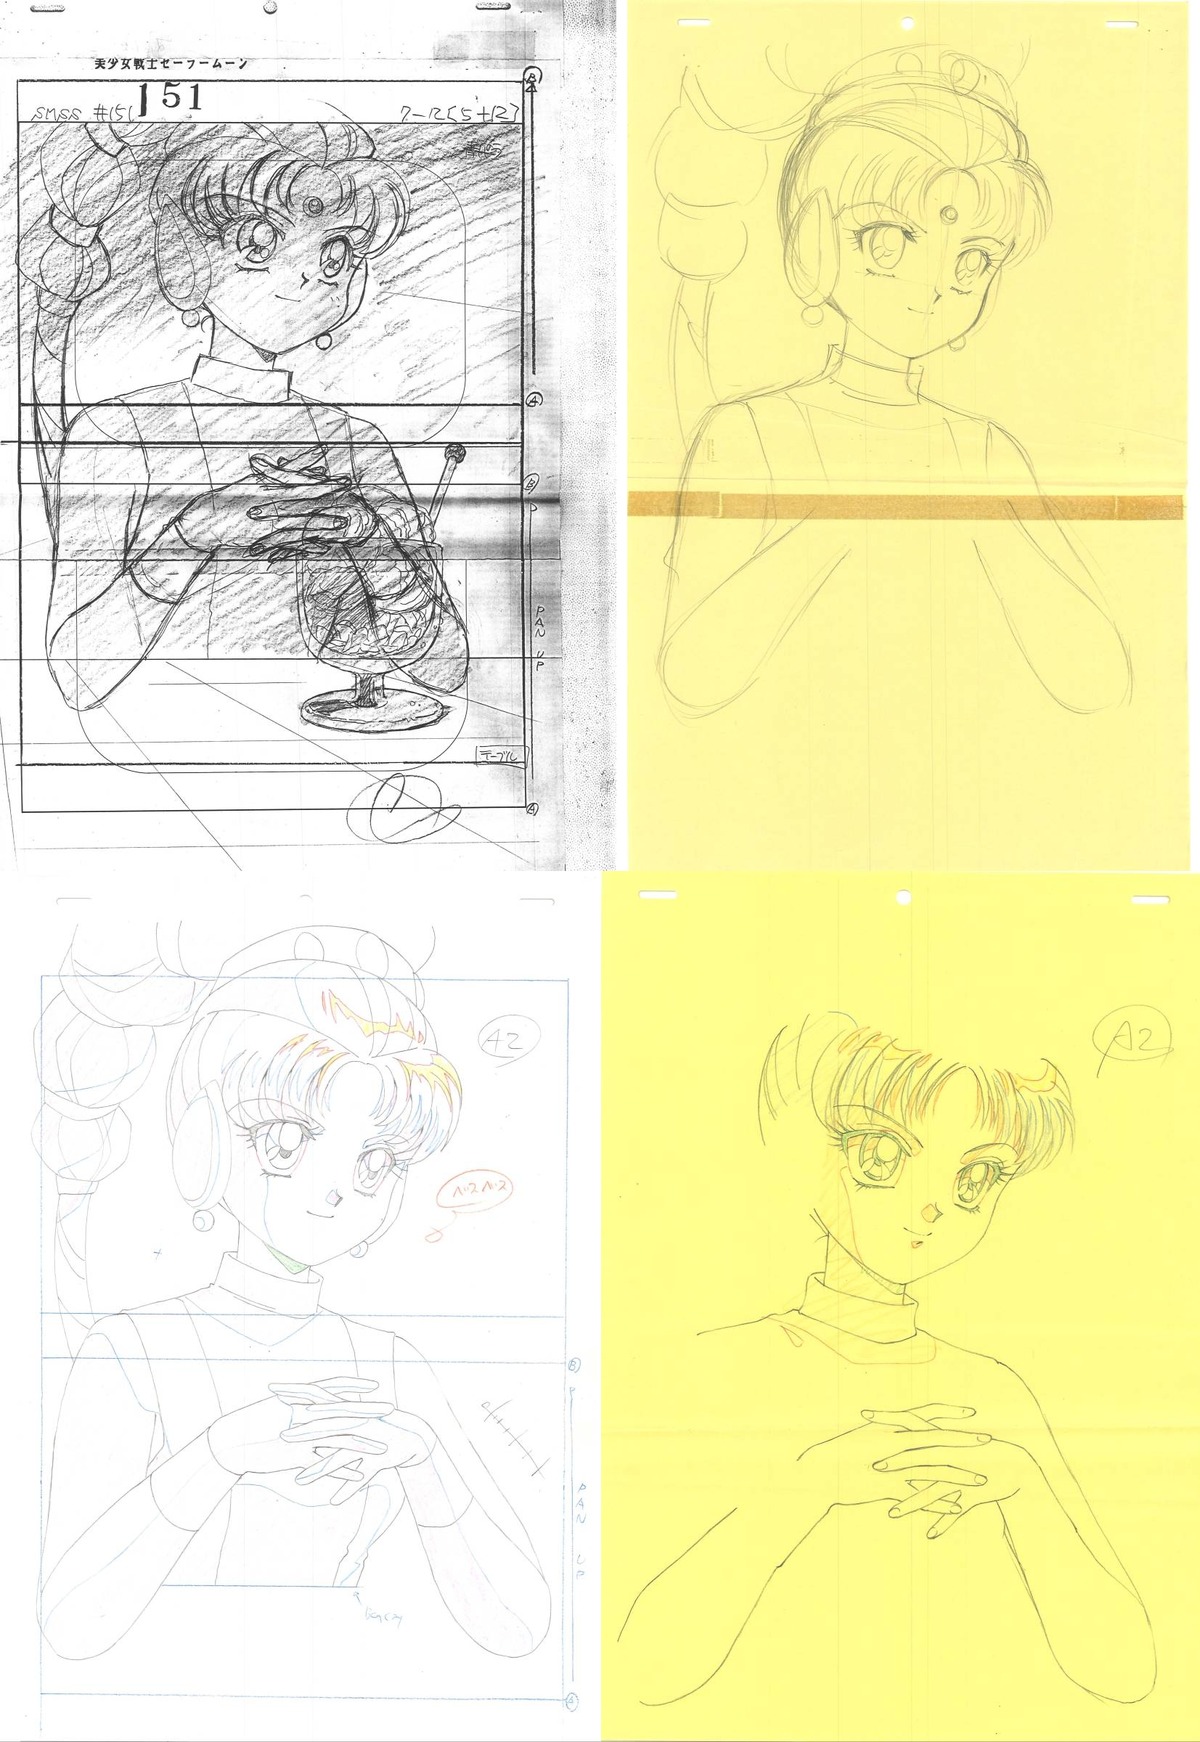 artist_unknown bishoujo_senshi_sailor_moon bishoujo_senshi_sailor_moon_super_s correction genga layout mari_tominaga production_materials storyboard